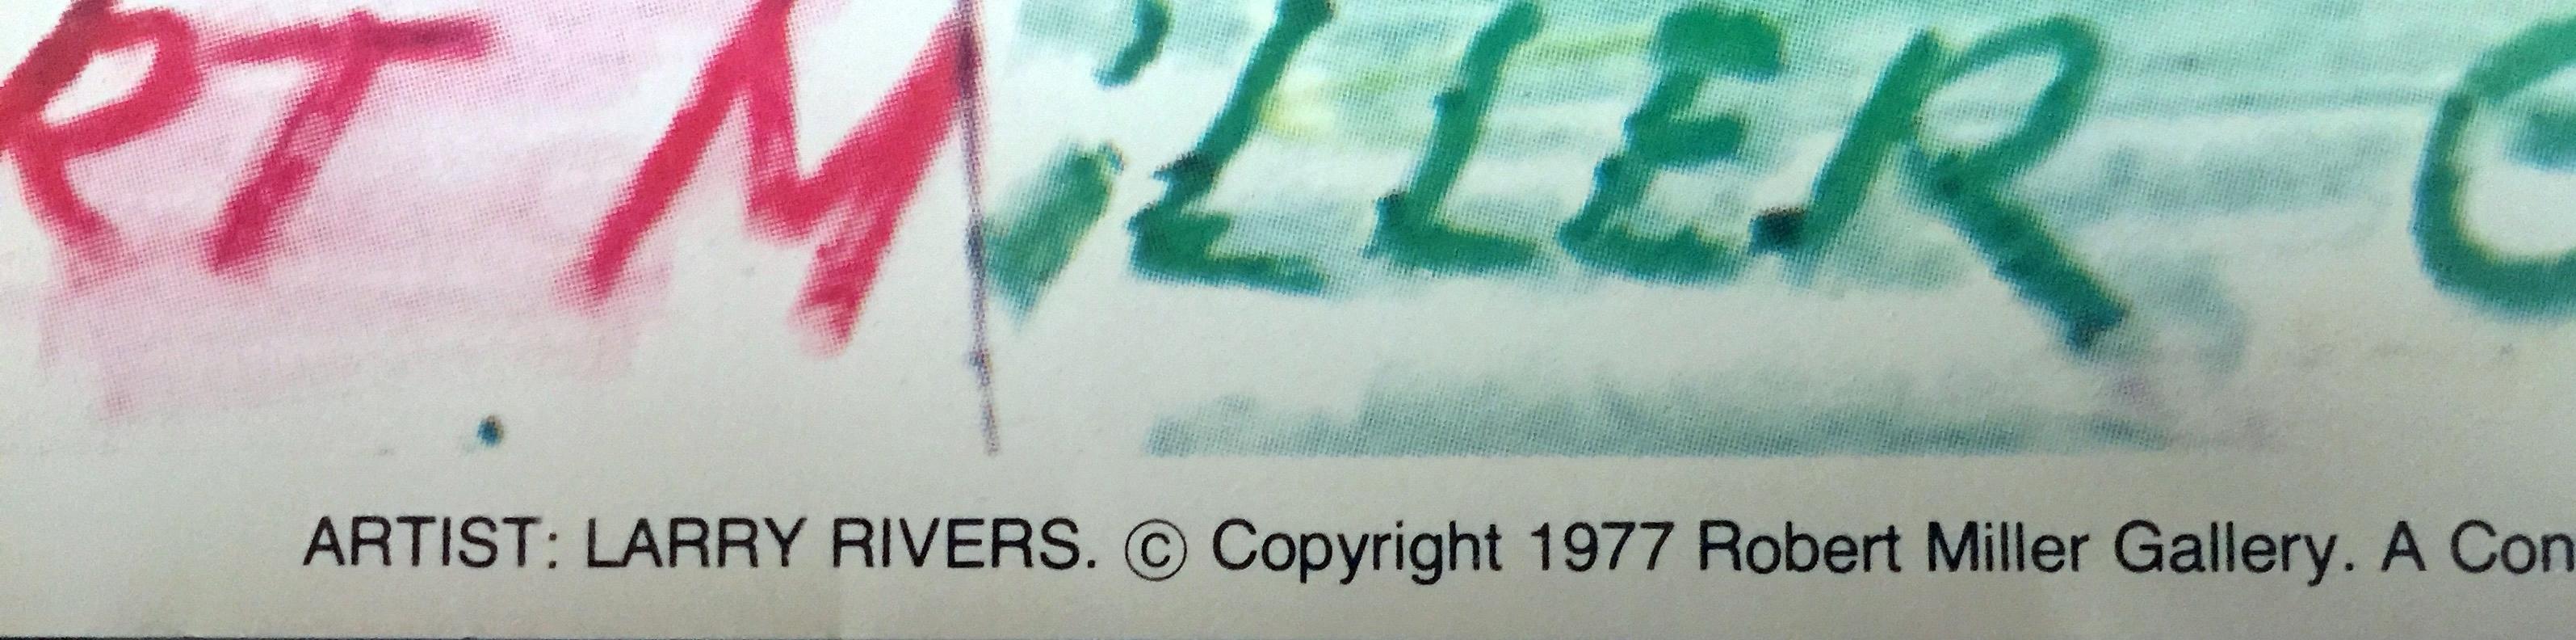 Larry Rivers
Offset-Lithographie-Poster 
Offsetlithografie-Poster auf Velinpapier 
Platte signiert (gedruckte Unterschrift)
32 × 30 Zoll
Ungerahmt
Seltene Vintage 1970er Larry Rivers Offsetlithographie Poster von der Robert Miller Gallery